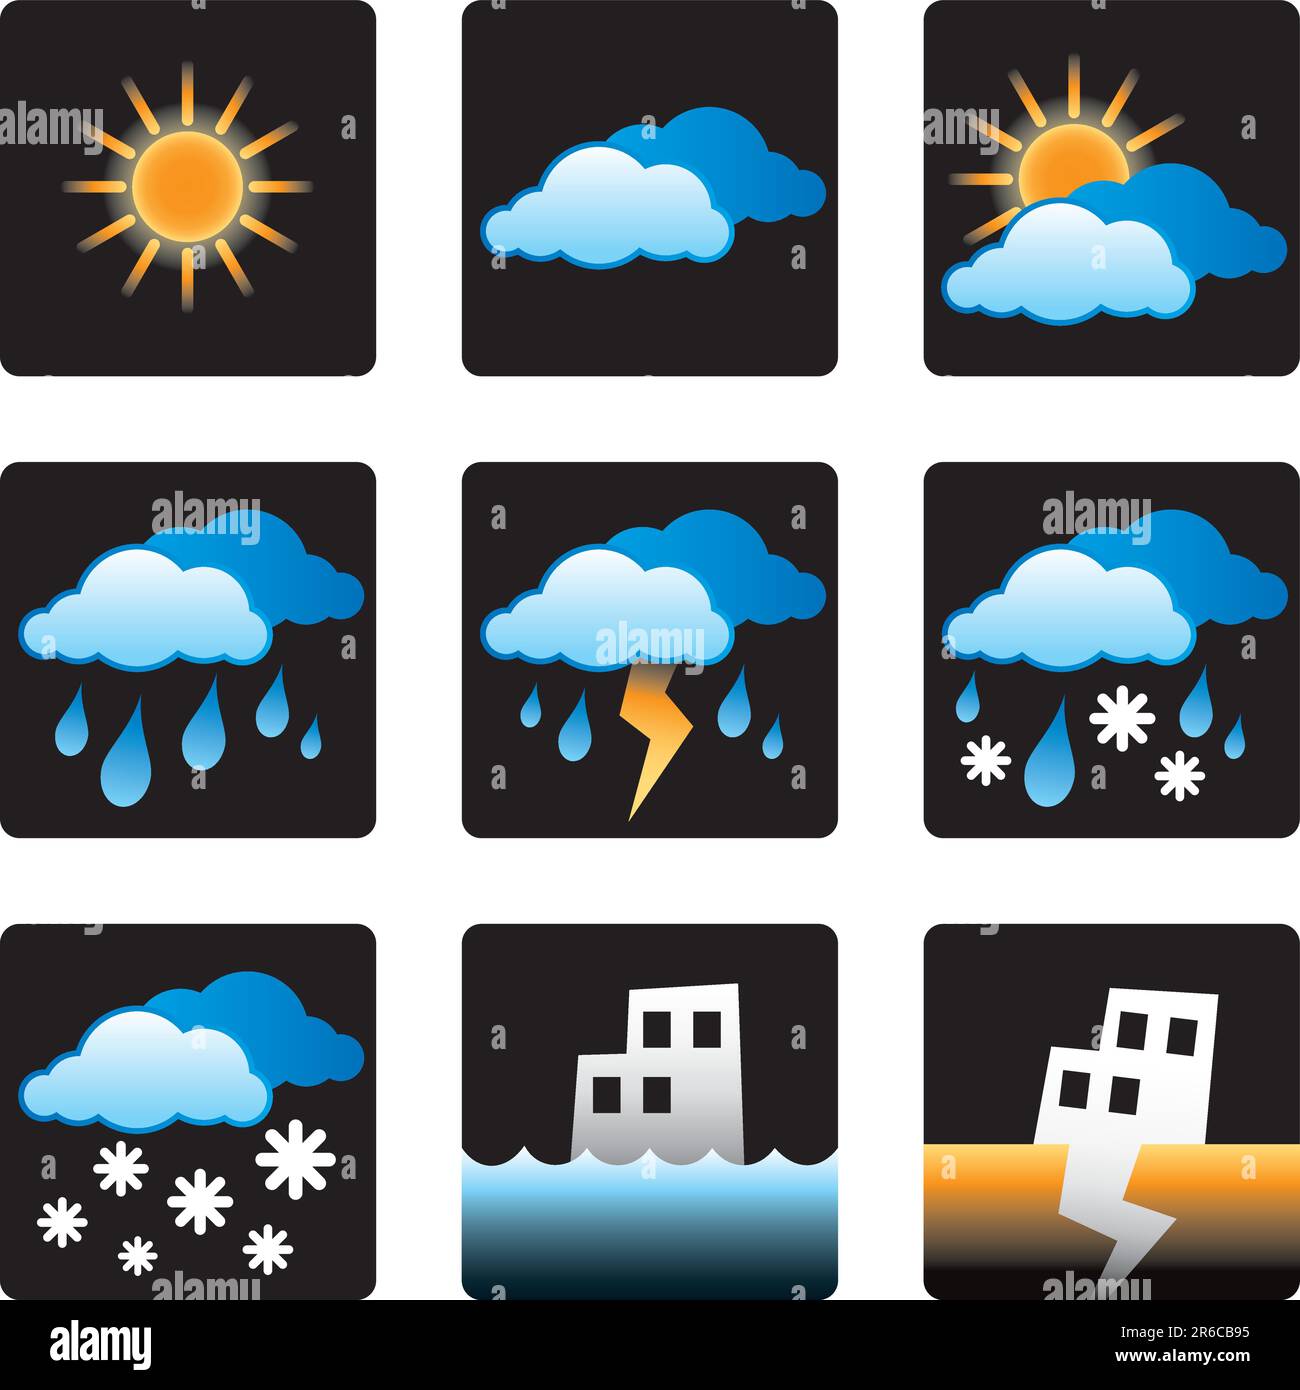 Wetter, Wettervorhersage, Sonne, Sonne, Wolke, bewölkt, bewölkt, Regen, Regen, Sturm, Schnee, Überschwemmung, Erdbeben, Umgebung, Symbole, Symbole, Vektor, Design... Stock Vektor